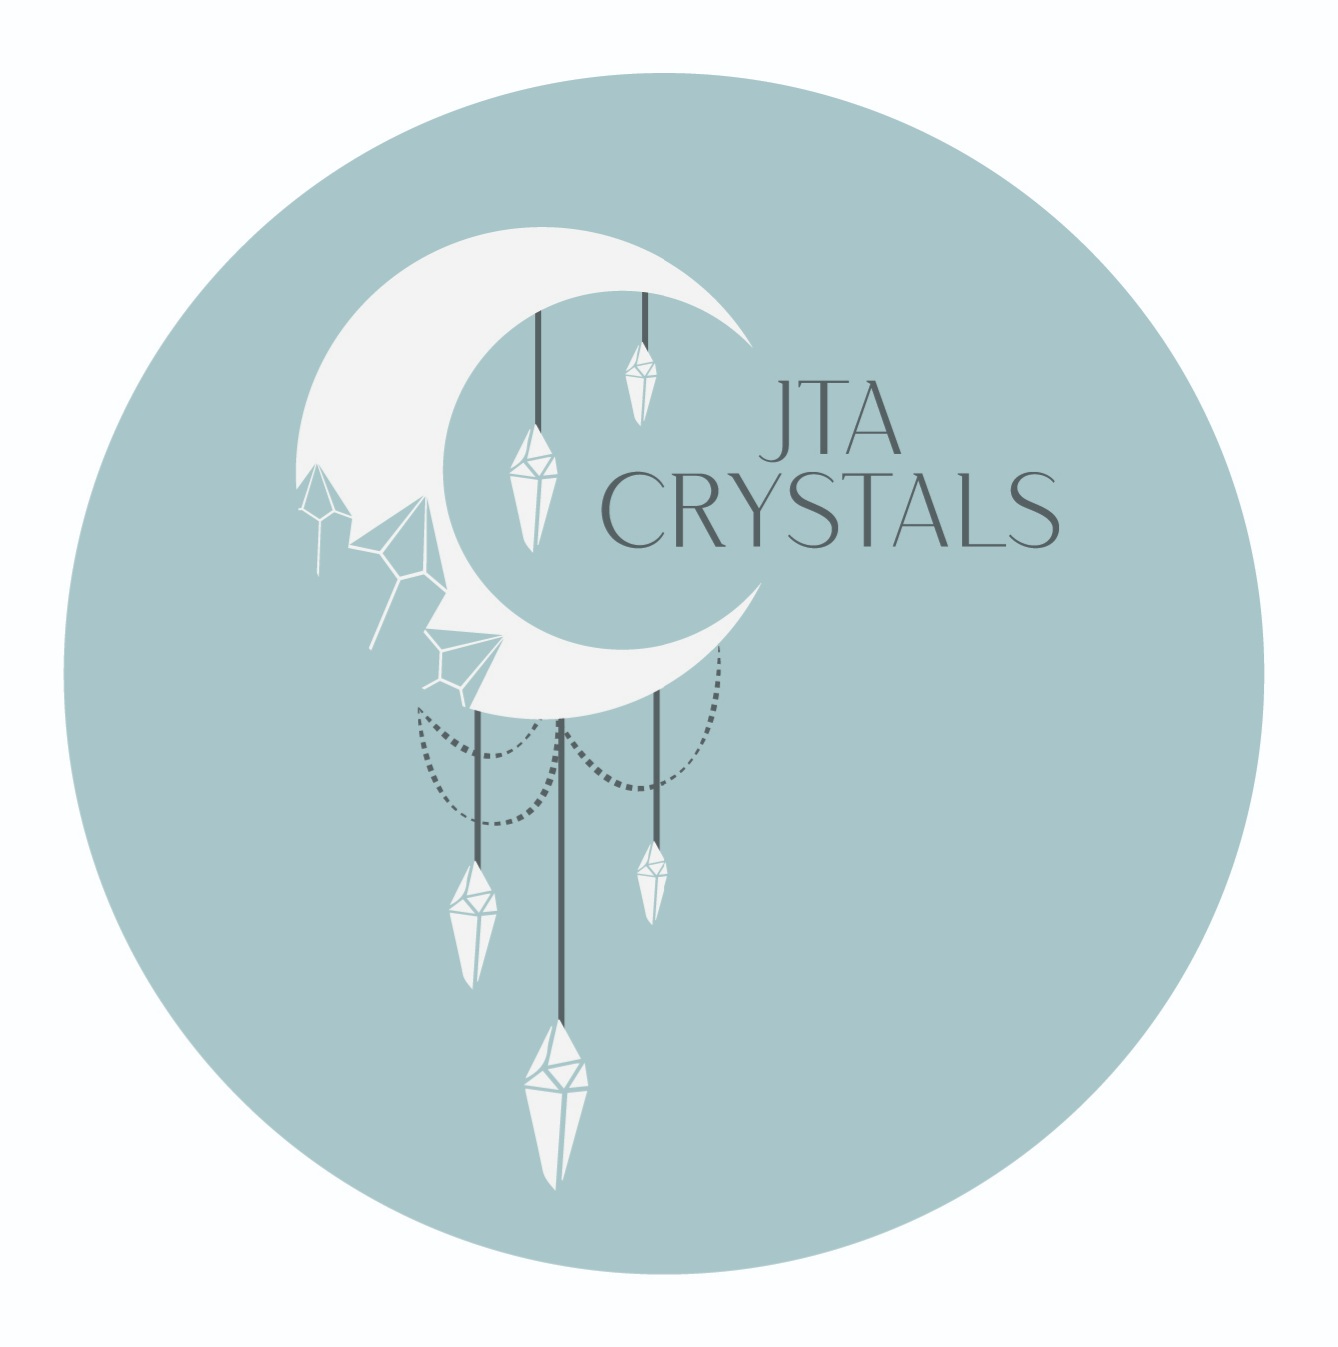 Jta Crystals